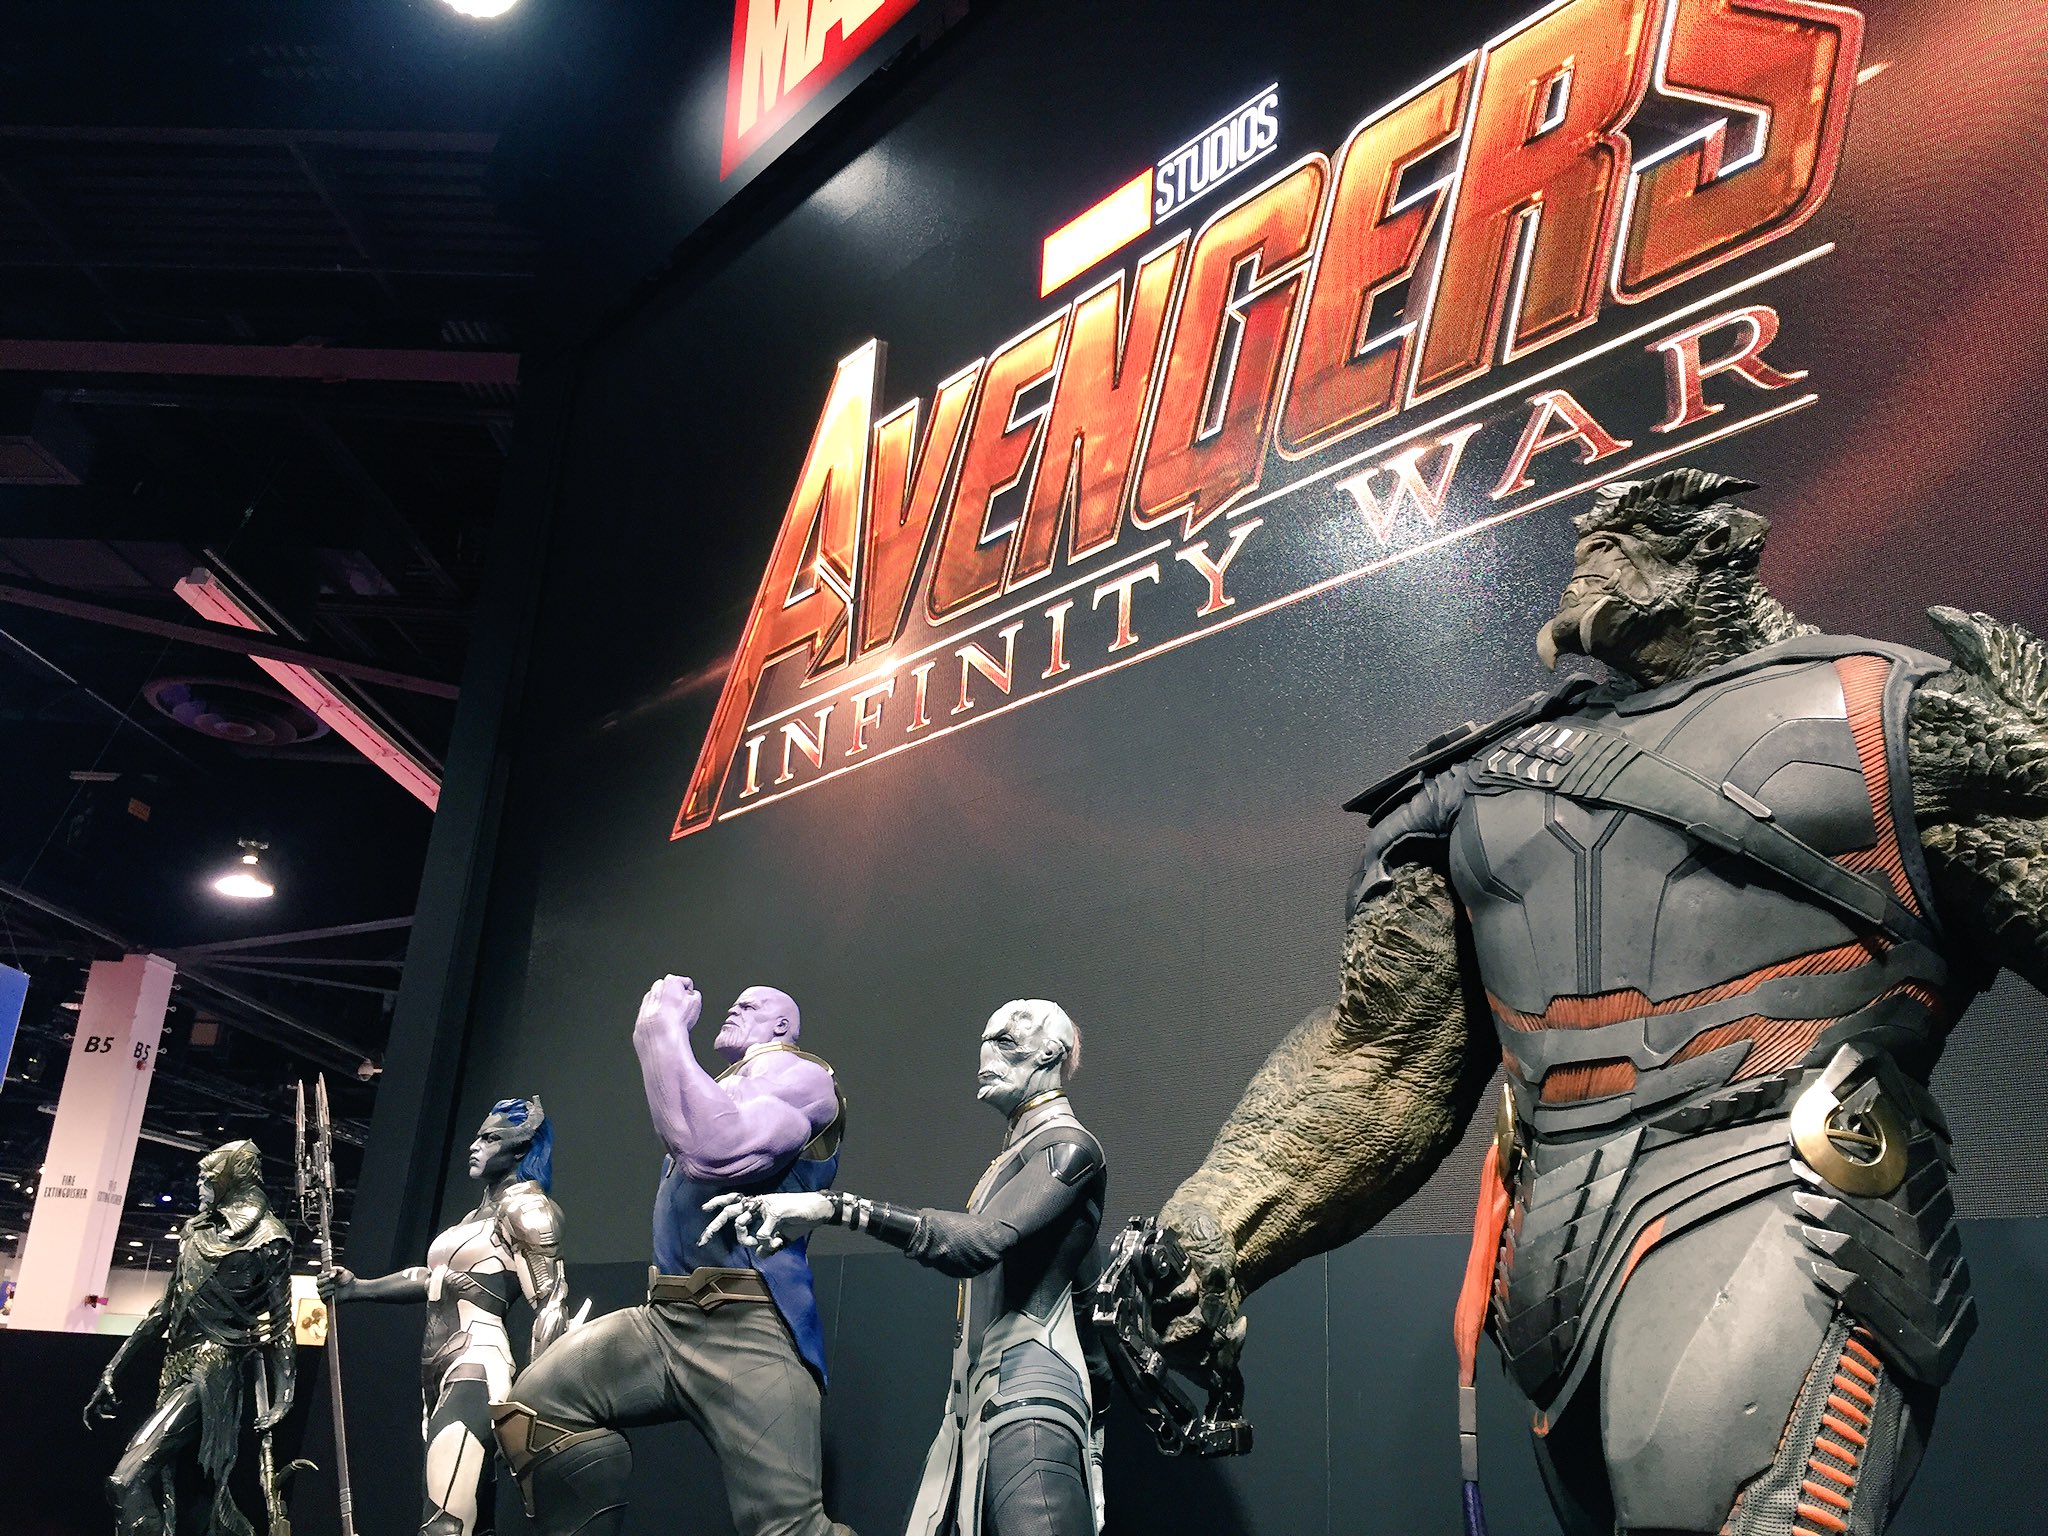 Photo du film Avengers: Infinity War au D23 2017 avec Thanos et les Children of Thanos et le logo